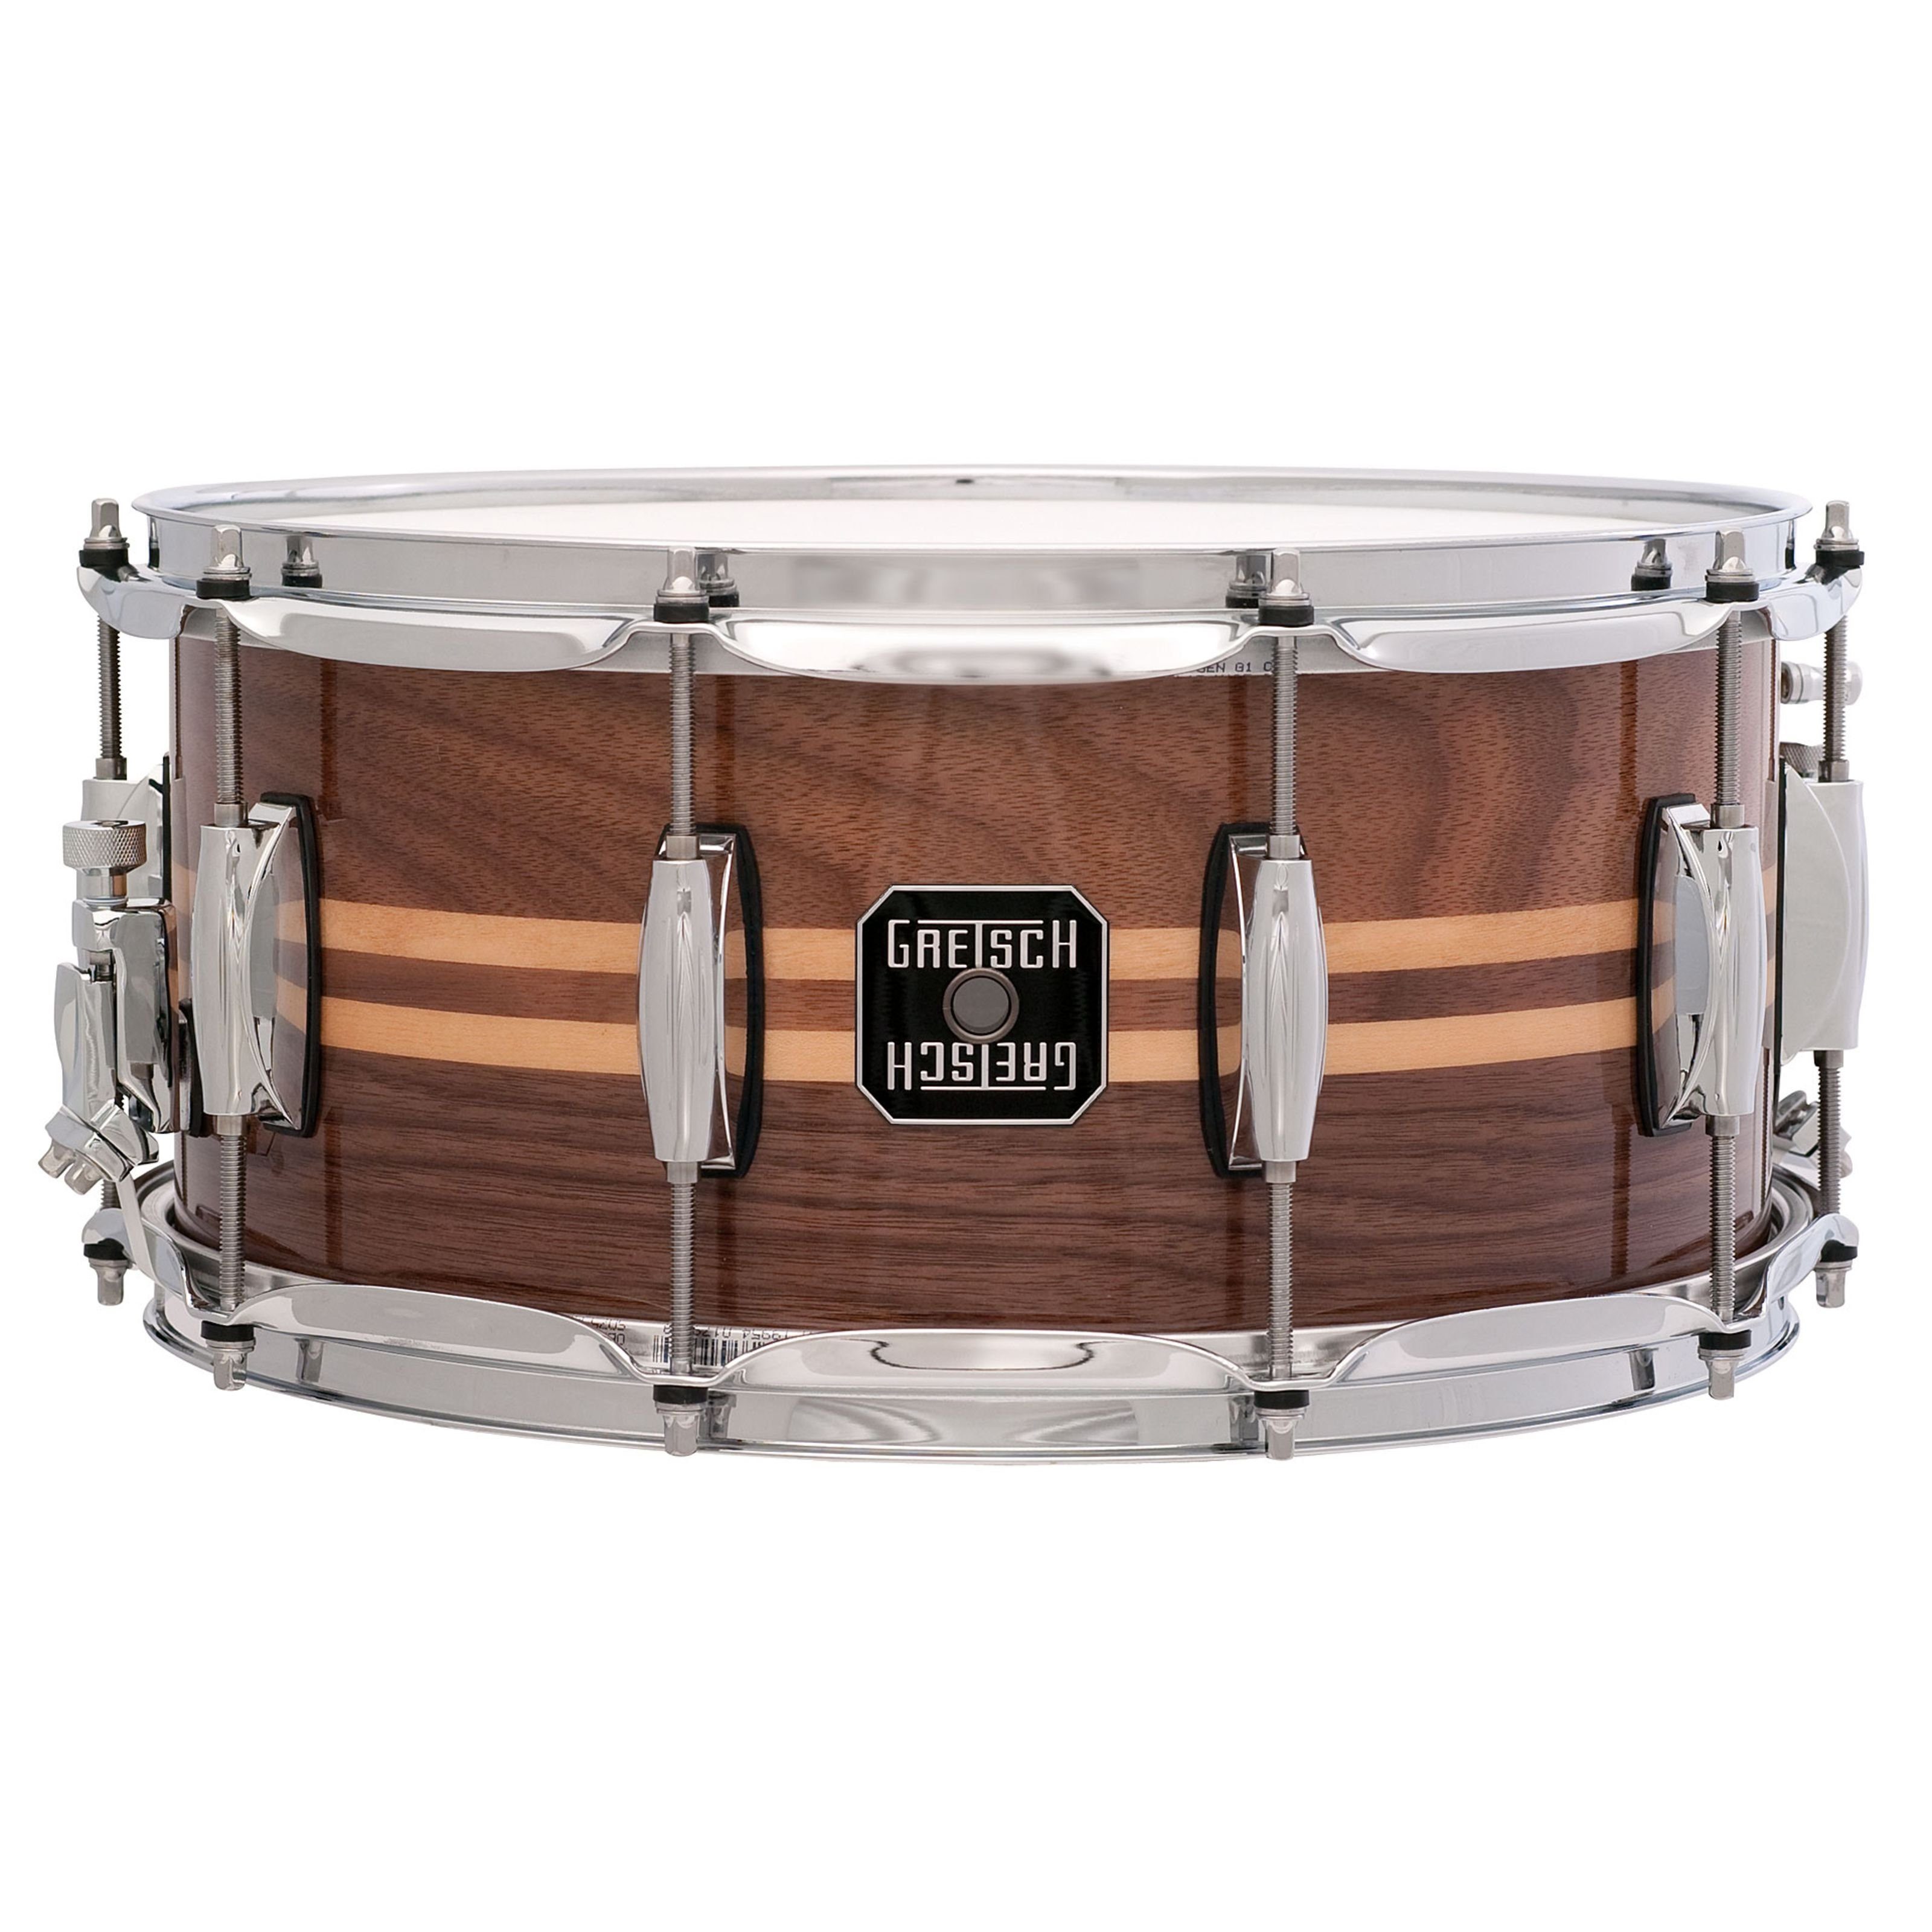 Gretsch Snare Drum, Schlagzeuge, Snare Drums, Full Range Snare S-6514W-MI, 14"x6,5", Gloss Walnut - Snare Drum